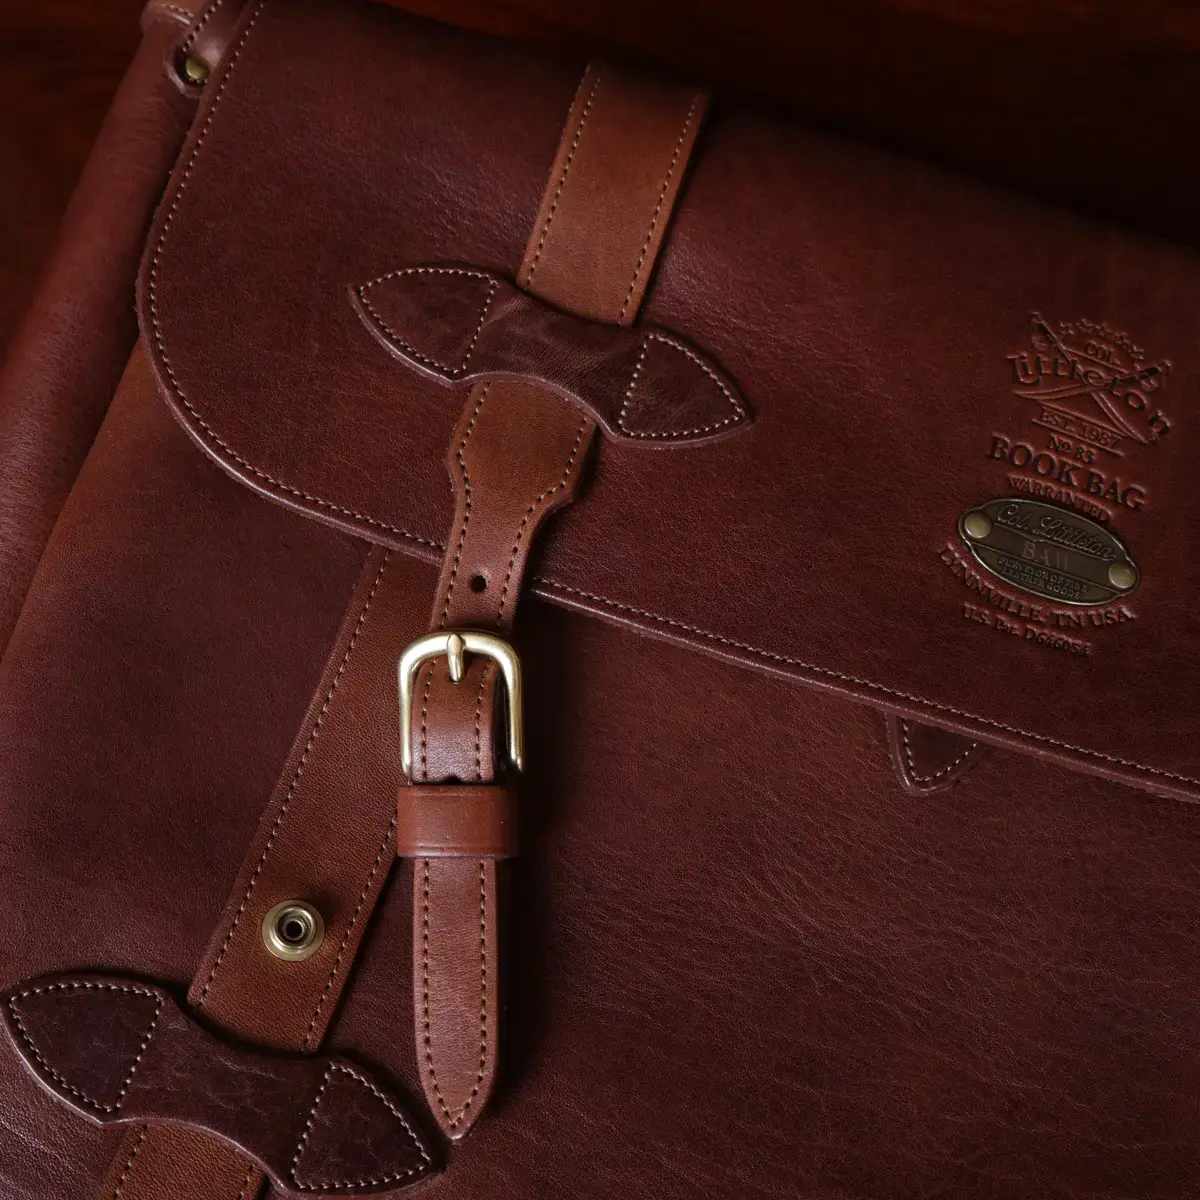 17"DHK Men Genuine Vintage Leather Messenger Shoulder Laptop Large Bag  Briefcase